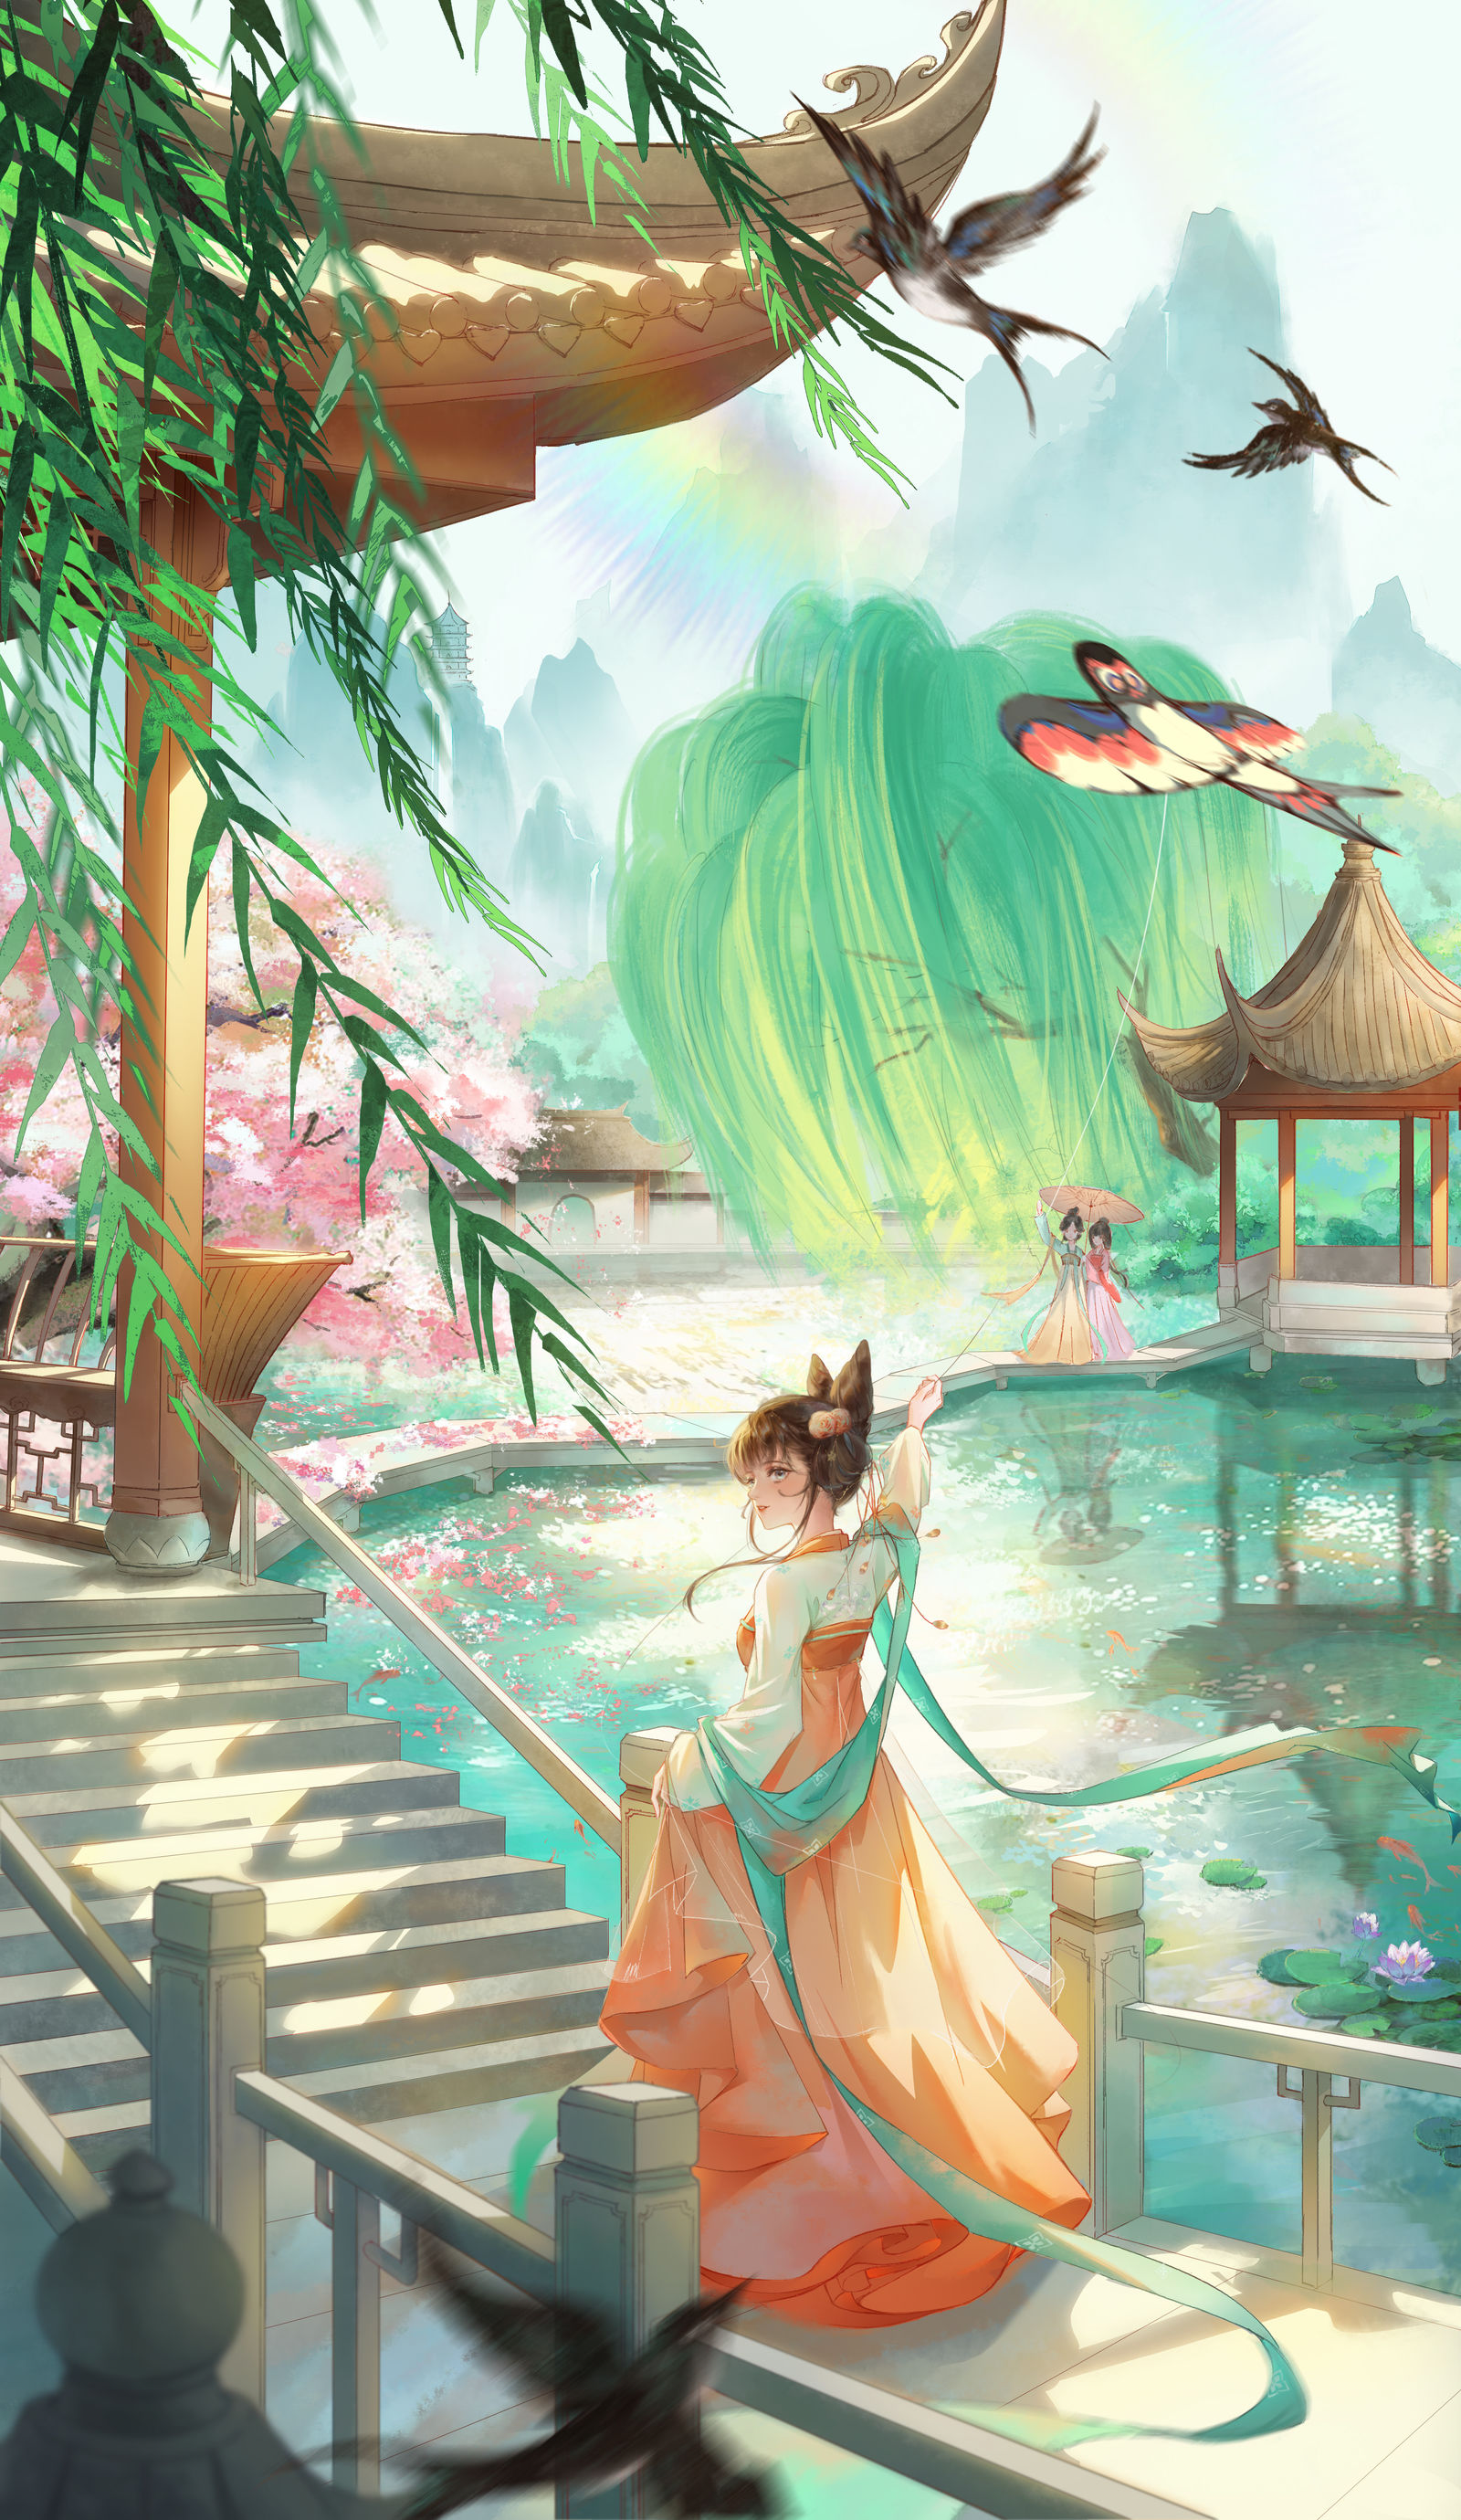 个人原创系列插画《阳春三月-湖心亭》插画图片壁纸